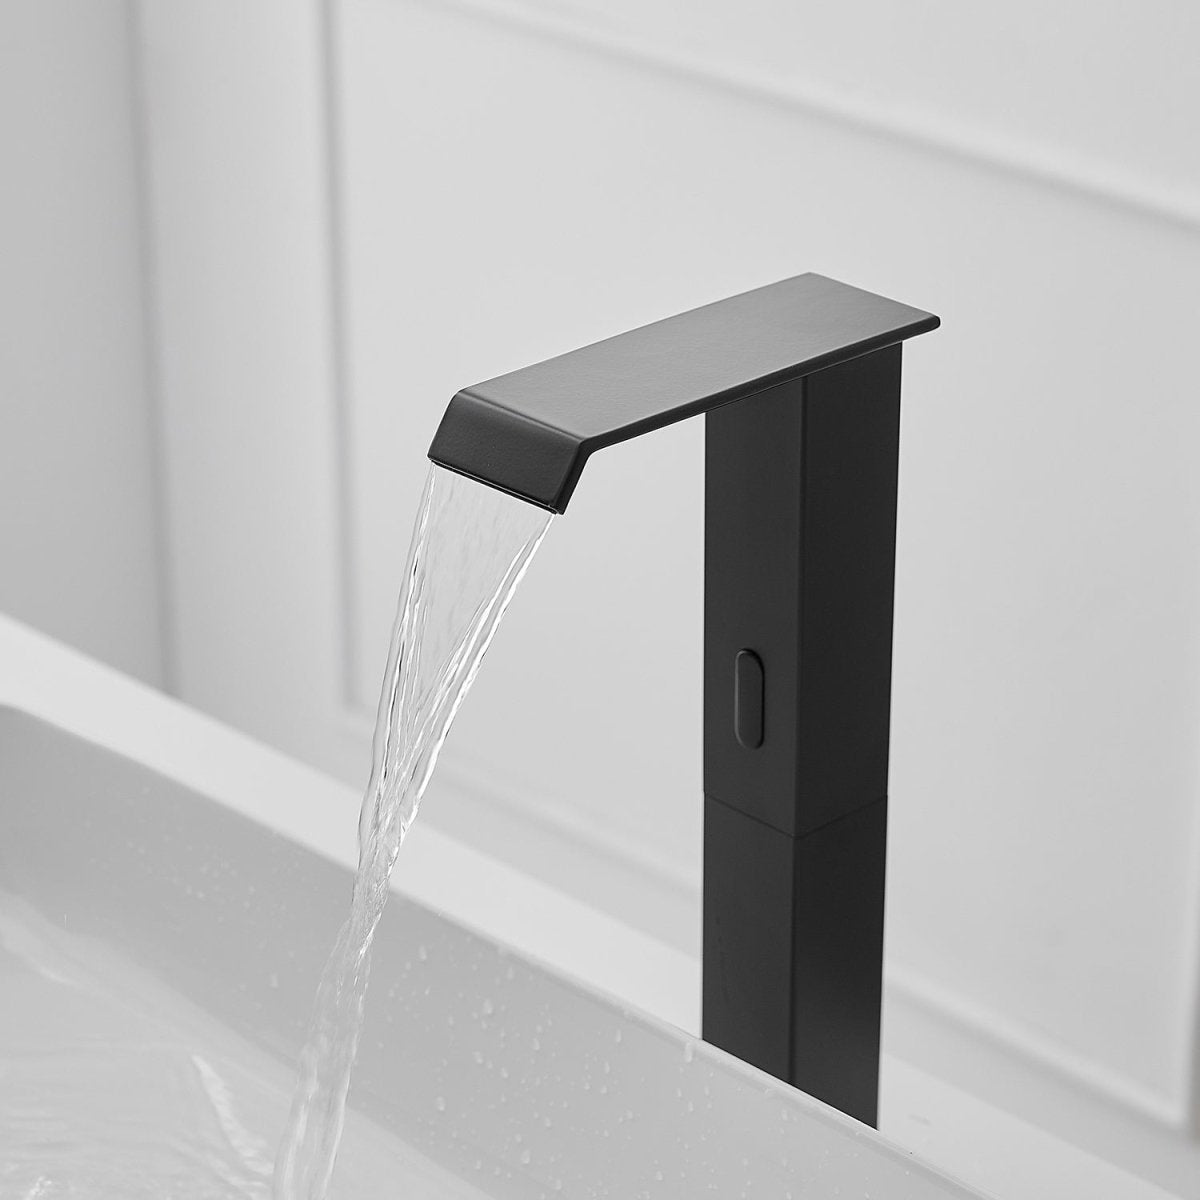 DC Automatic Sensor Touchless Bathroom Faucet Matte Black - buyfaucet.com